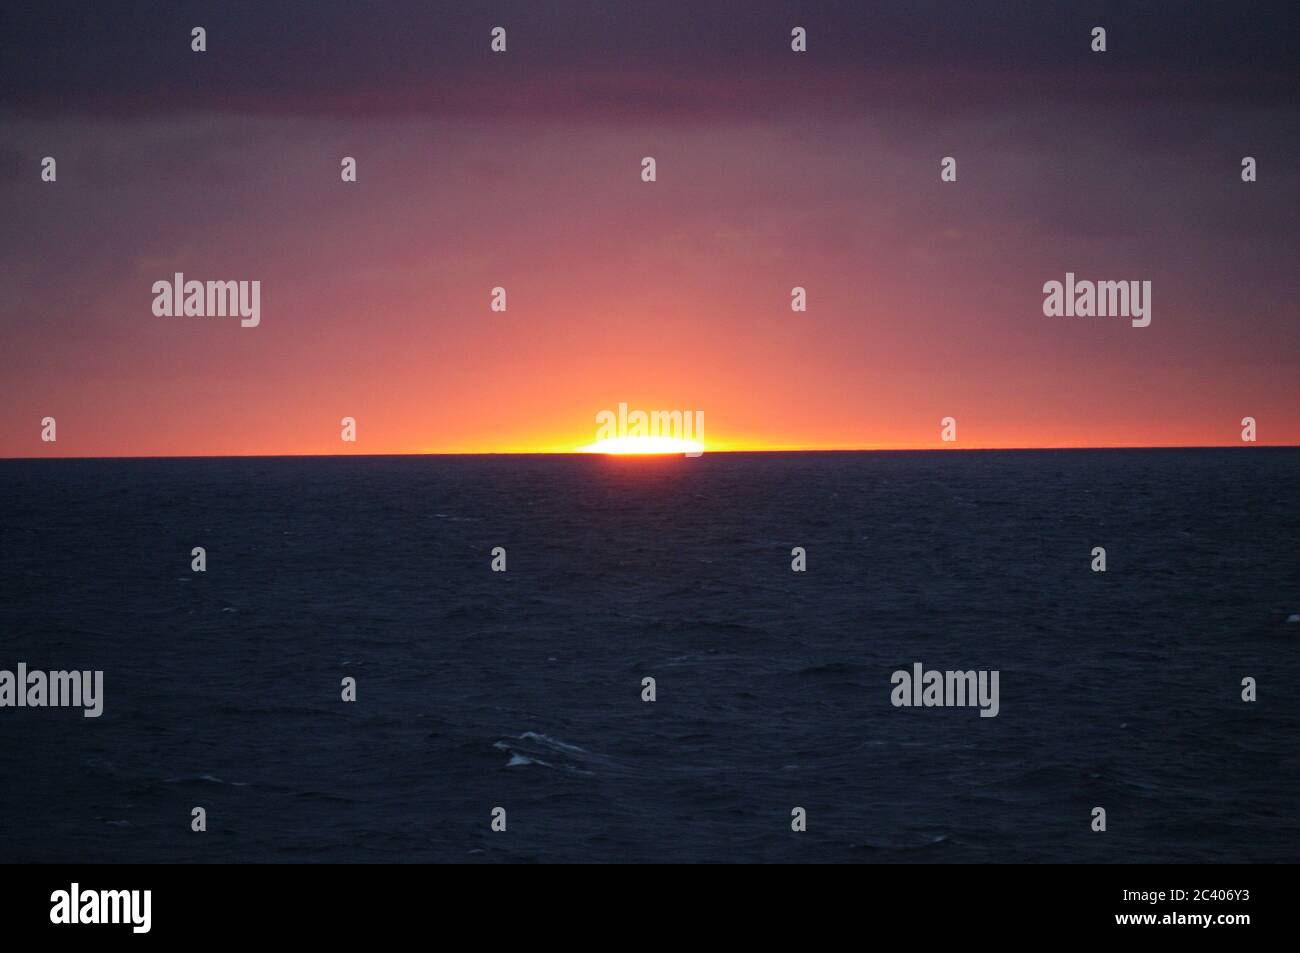 Secuencia de imágenes de una puesta de sol desde el mismo punto de vista, puesta de sol en el mar, horizonte al atardecer, horizonte al atardecer sobre el mar horizonte magenta Foto de stock